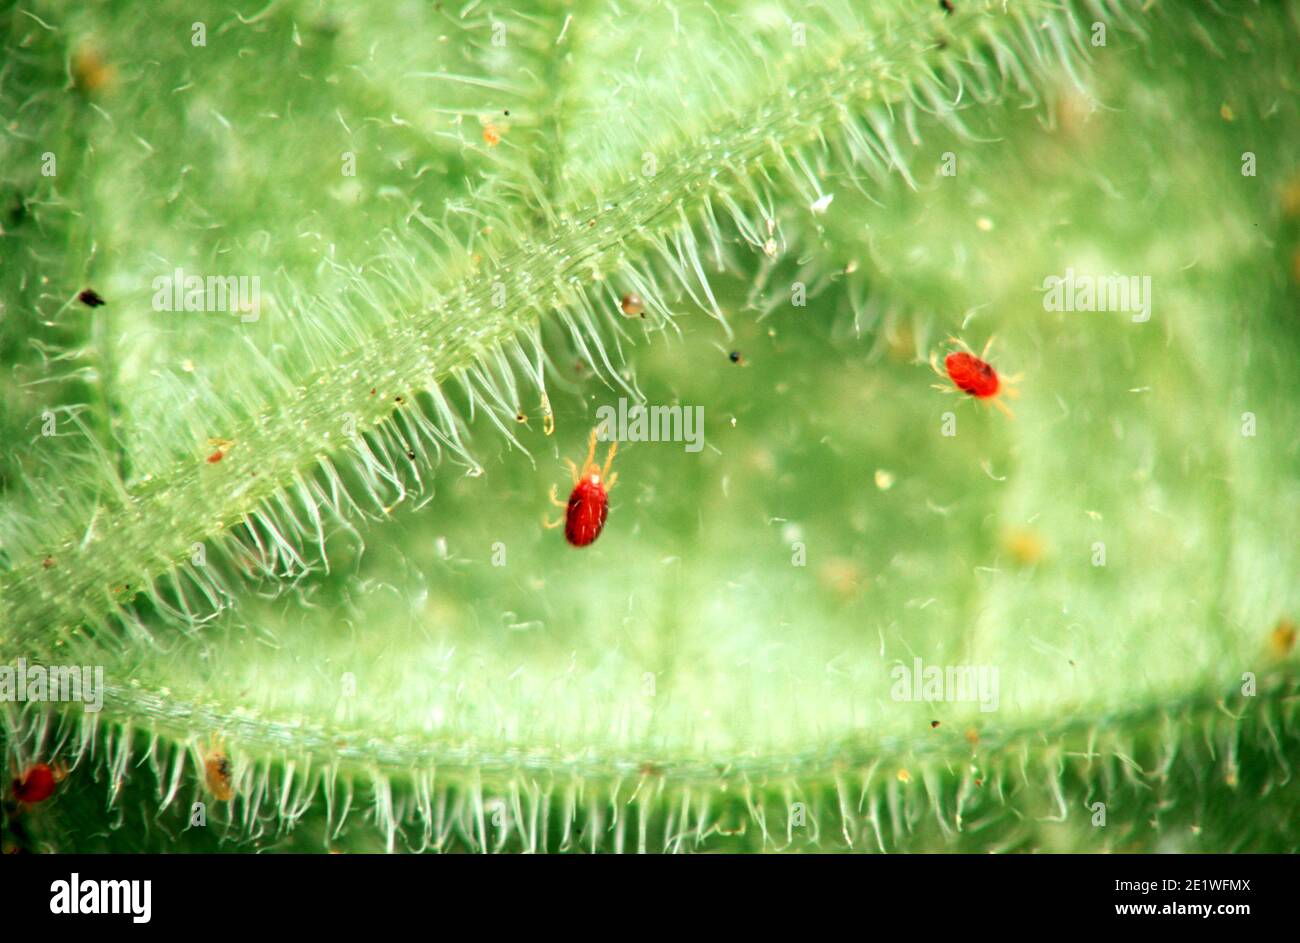 Tetranychus urticae (gebräuchliche Namen sind rote Spinnmilbe und zweifleckige Spinnmilbe) ist eine Art von pflanzenfressenden Milben. Stockfoto